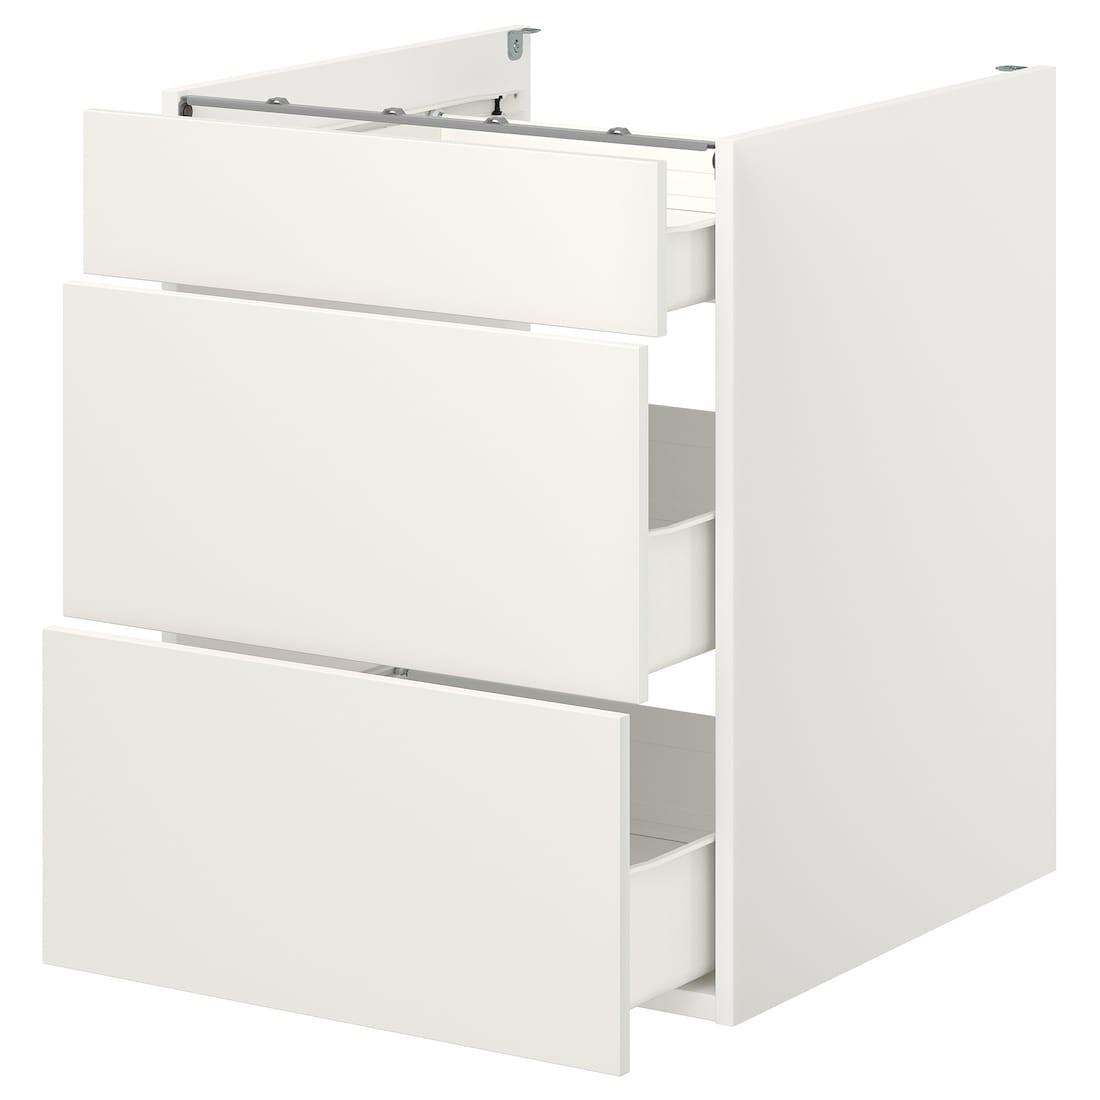 IKEA ENHET ЭНХЕТ Напольный шкаф с 3 ящиками, белый, 60x62x75 см 09320988 093.209.88